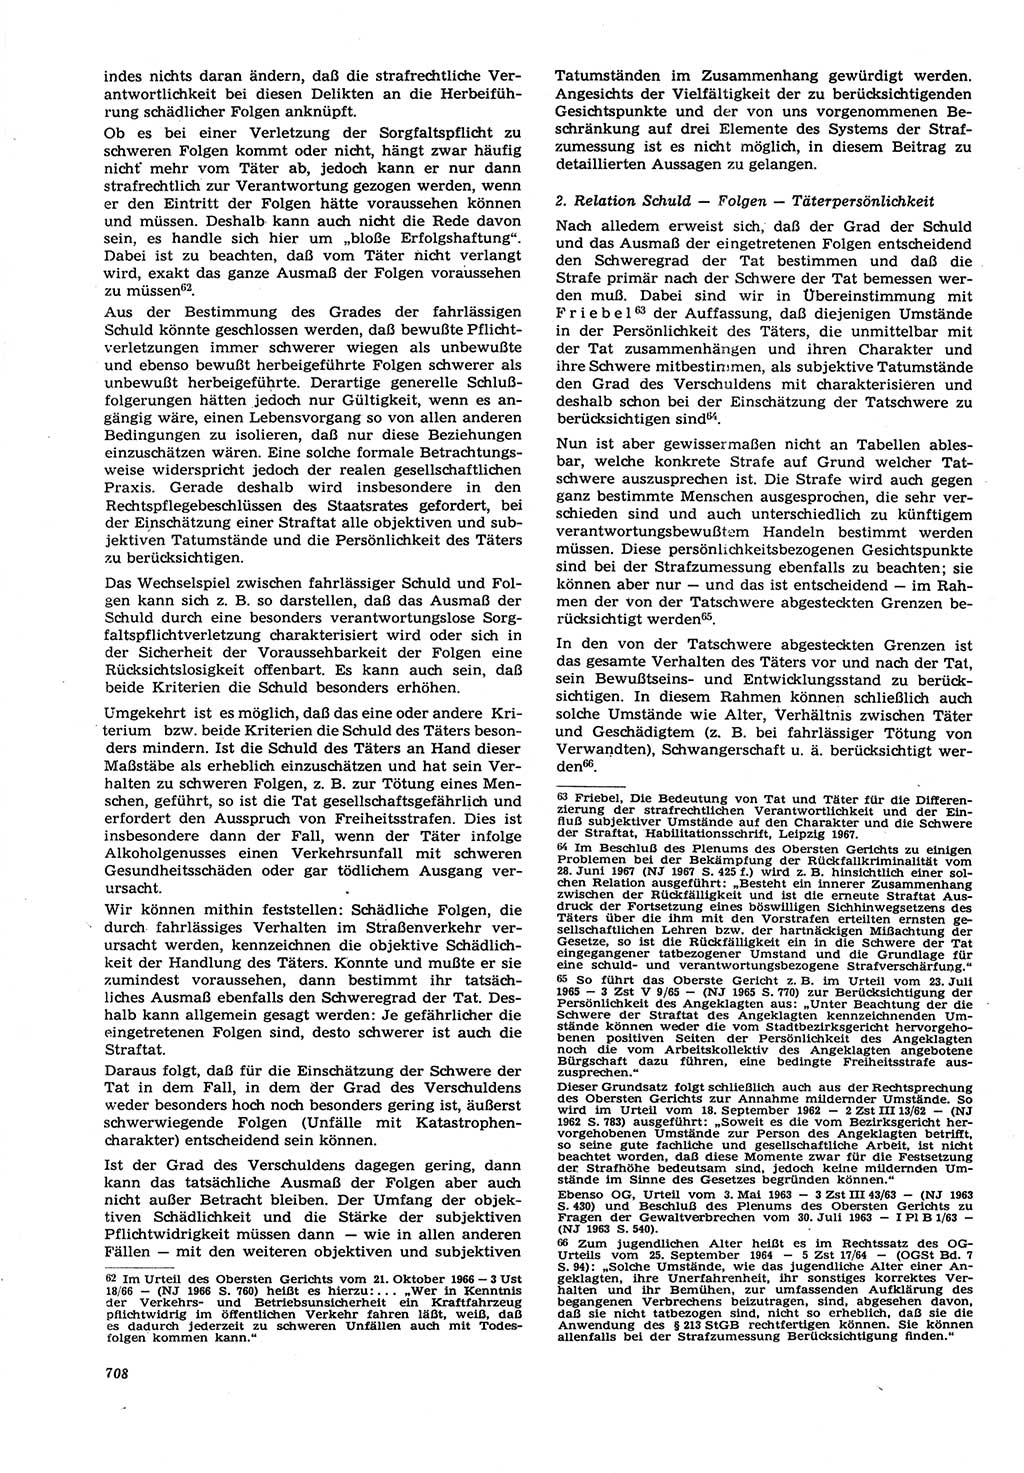 Neue Justiz (NJ), Zeitschrift für Recht und Rechtswissenschaft [Deutsche Demokratische Republik (DDR)], 21. Jahrgang 1967, Seite 708 (NJ DDR 1967, S. 708)